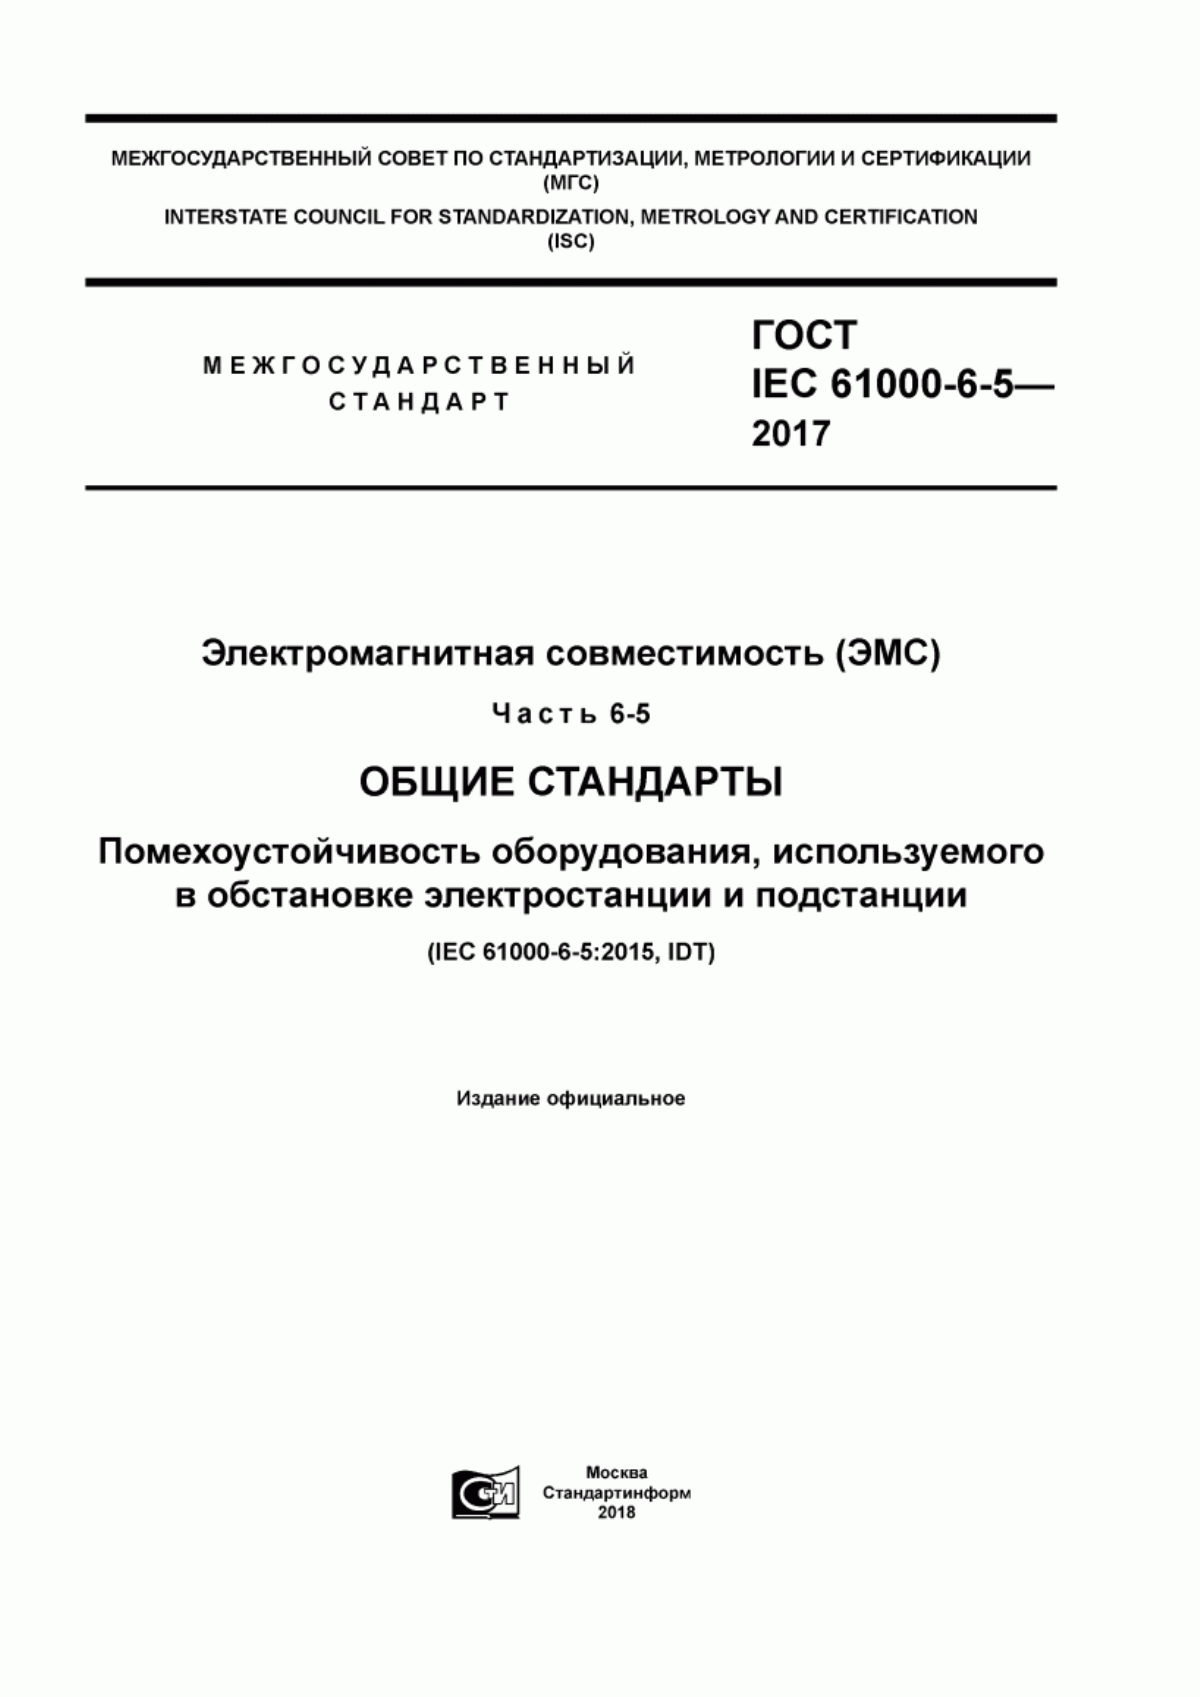 ГОСТ IEC 61000-6-5-2017 Электромагнитная совместимость (ЭМС). Часть 6-5. Общие стандарты. Помехоустойчивость оборудования, используемого в обстановке электростанции и подстанции